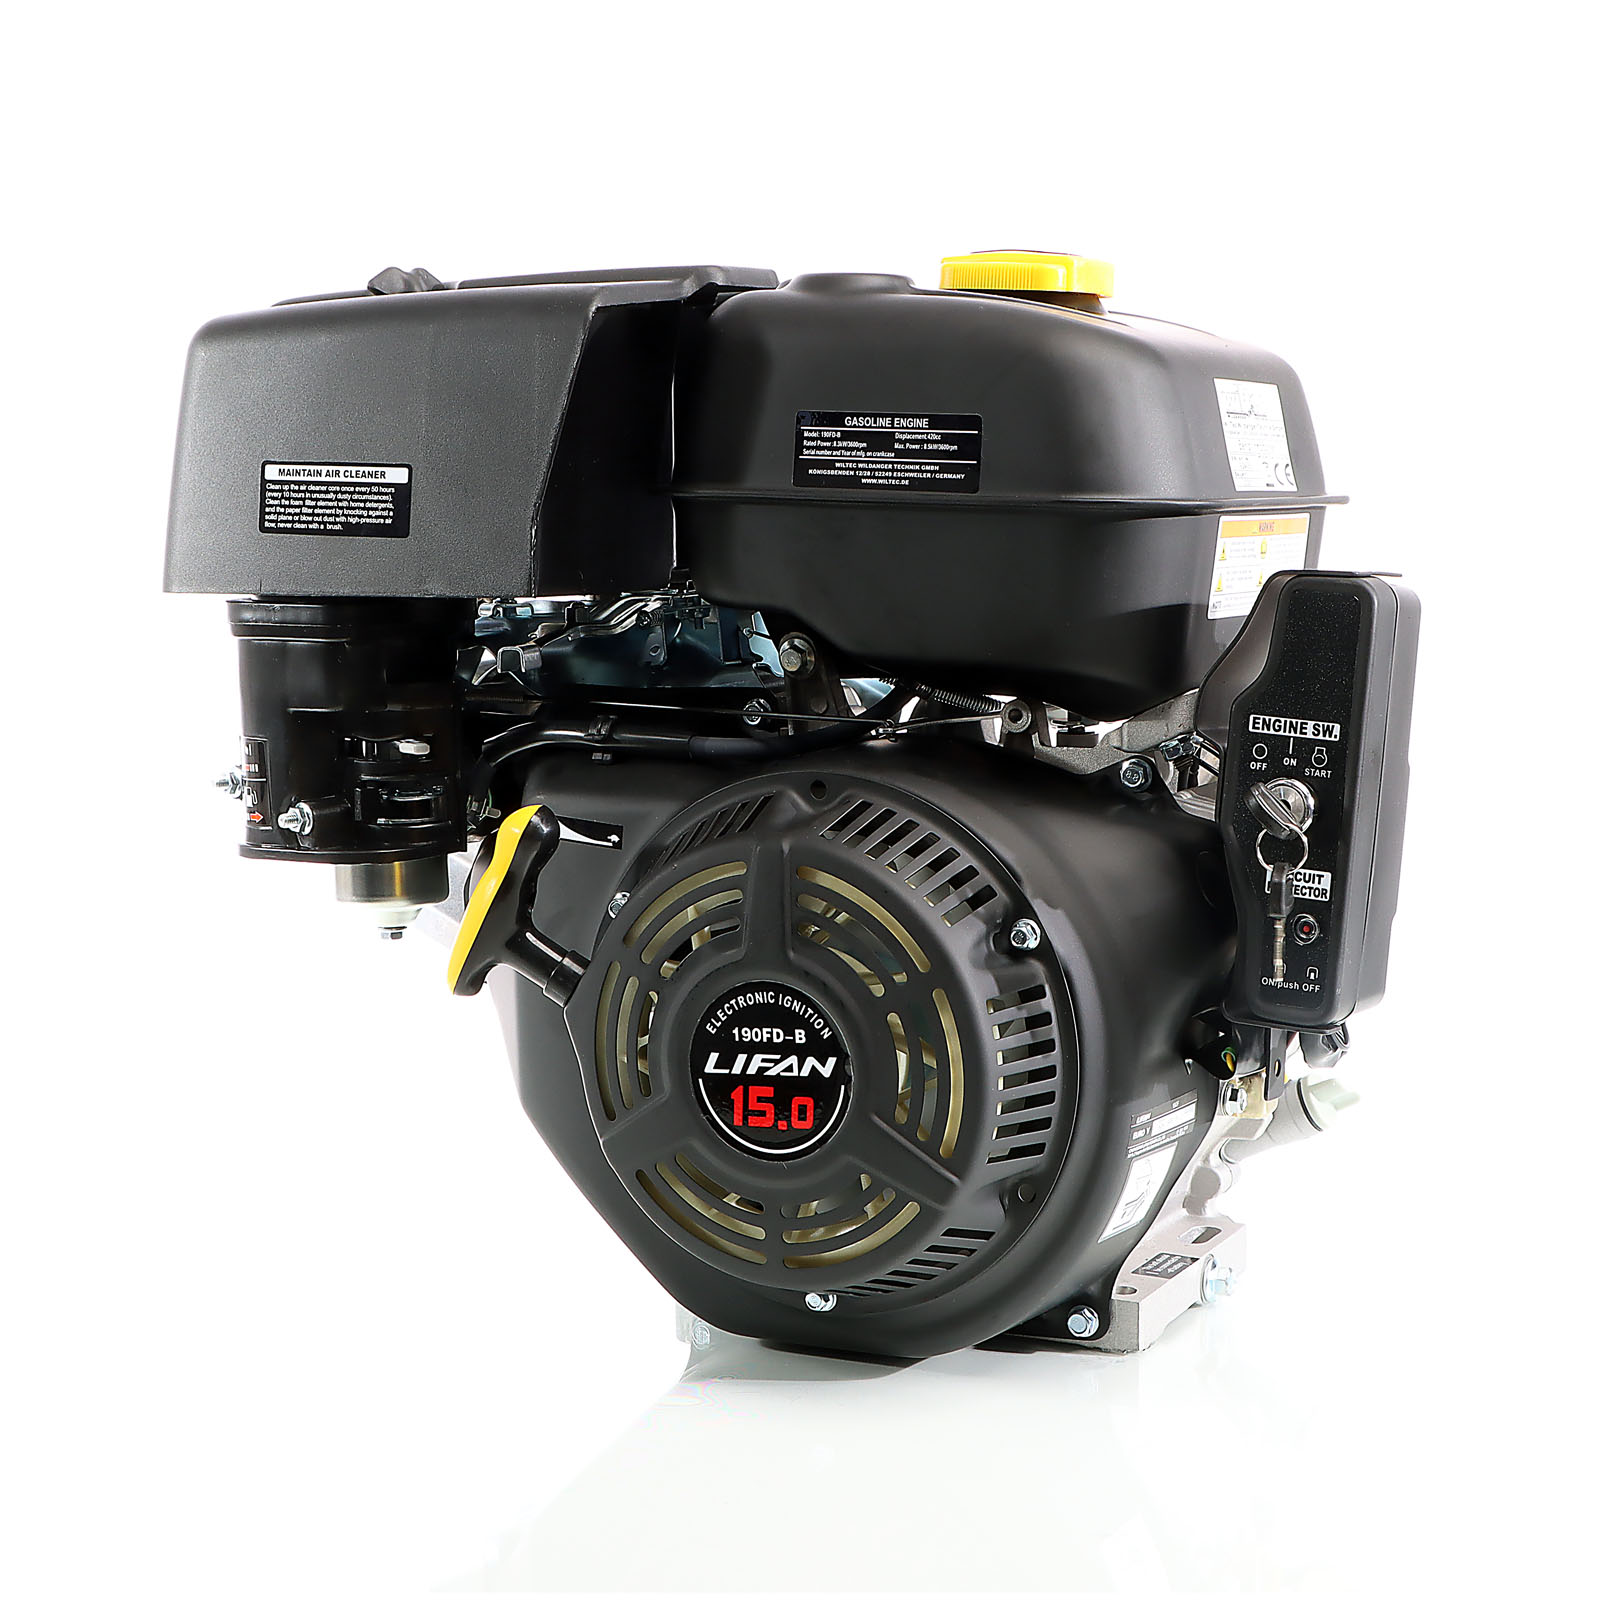 LIFAN 190 Benzinmotor 10kW (15PS) 25mm mit E-Start Kartmotor